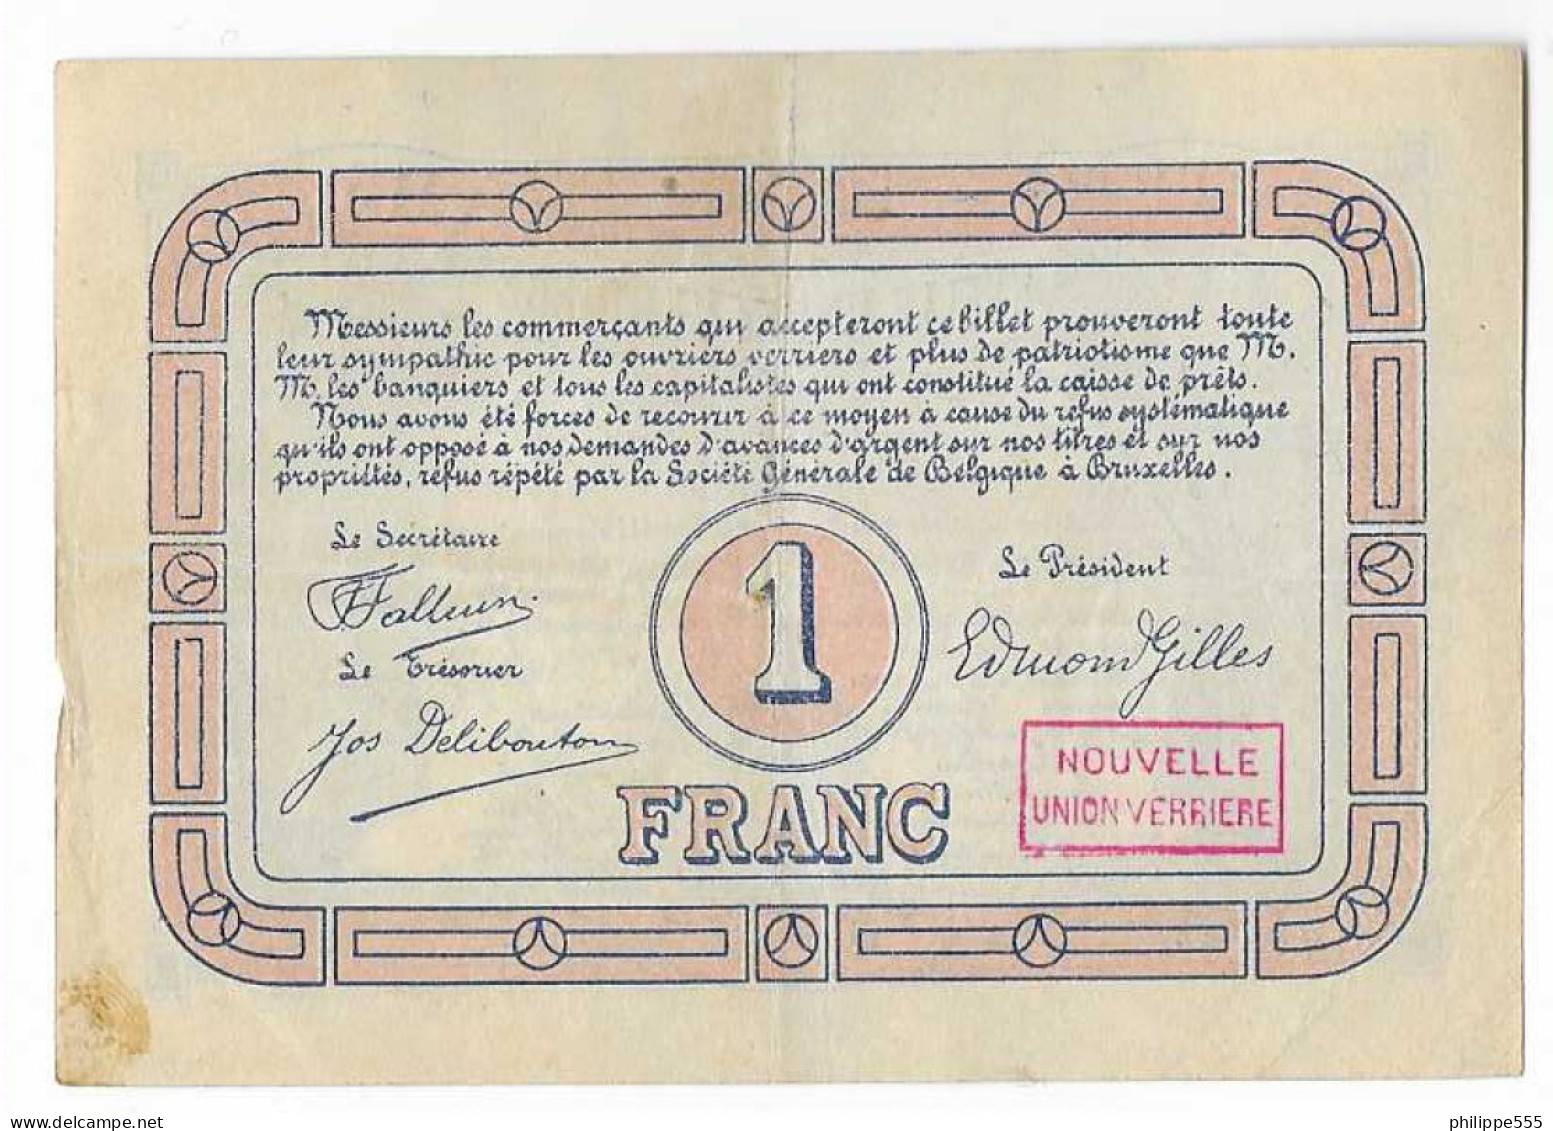 Noodgeld Lodelinsart 1 Frank 1915 - 1-2 Francs